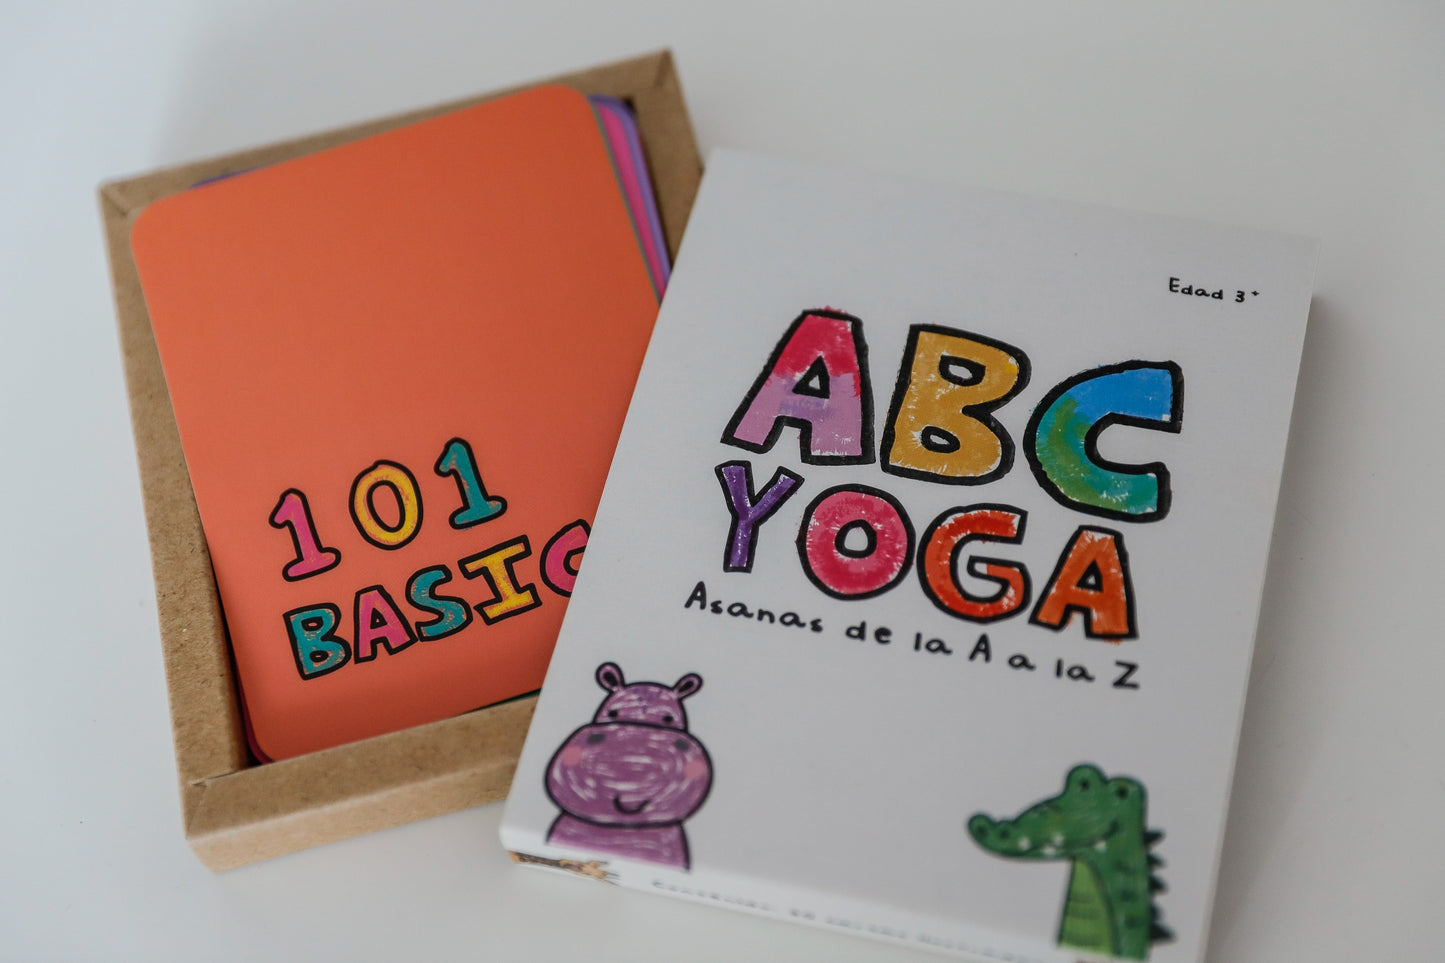 ABC Yoga - Asanas de la A a la Z